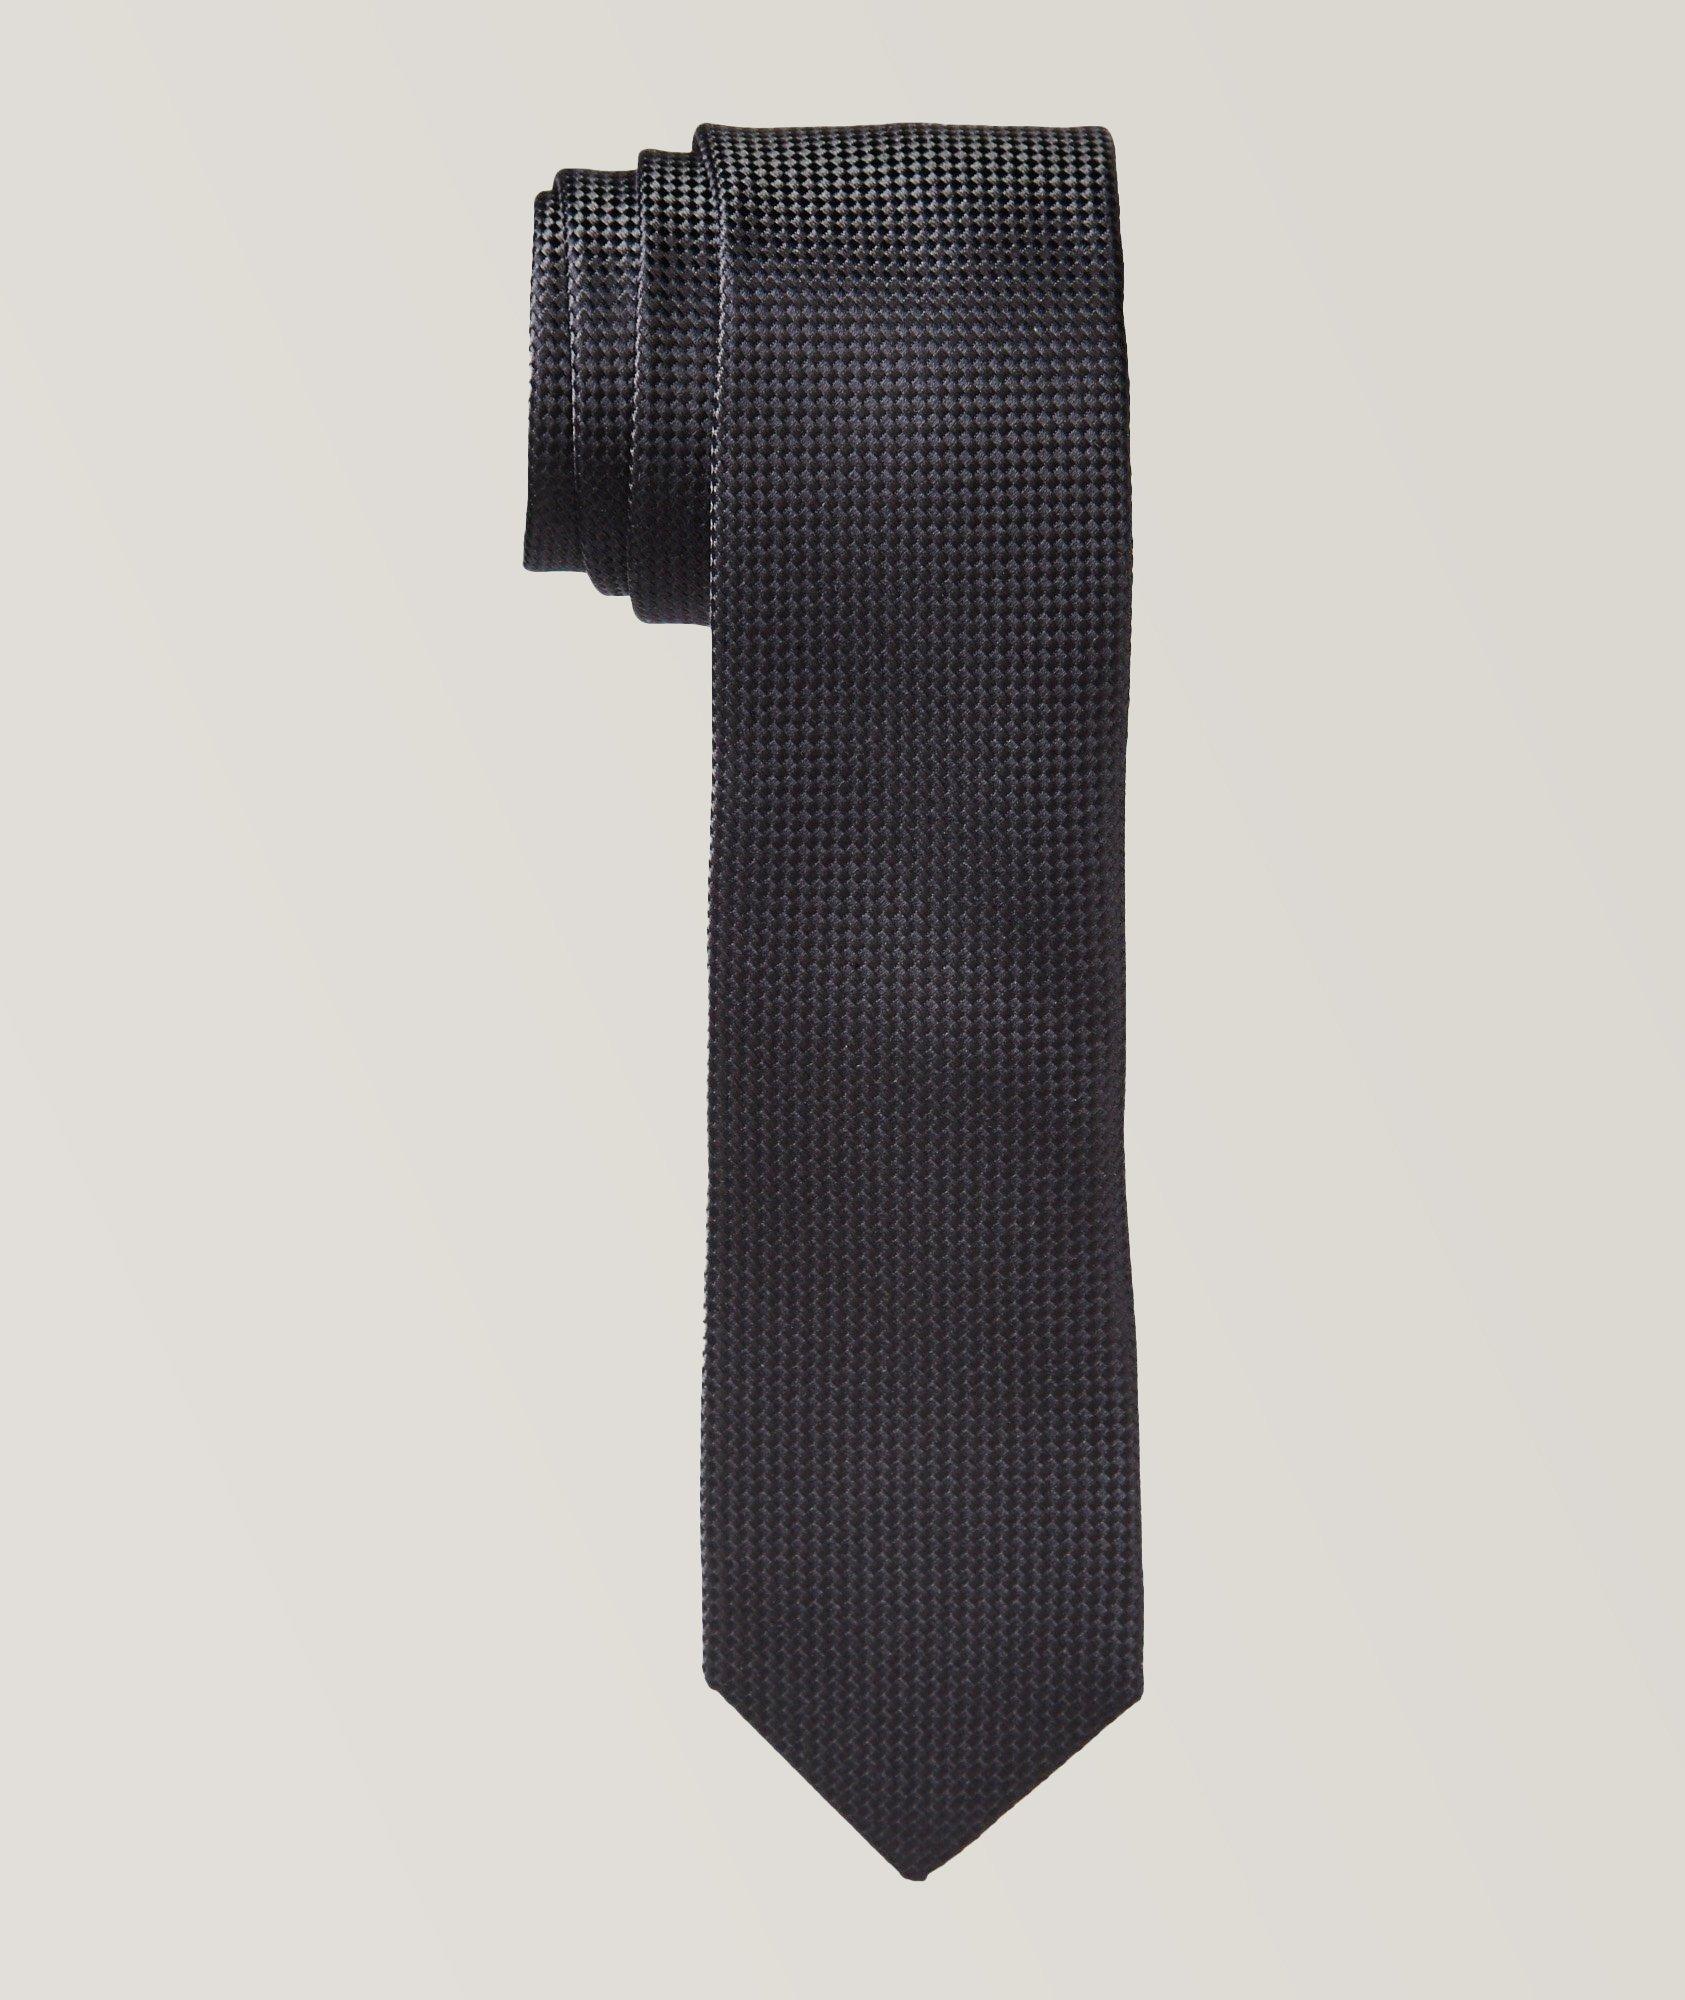 Cravate en soie à motif tissé image 0